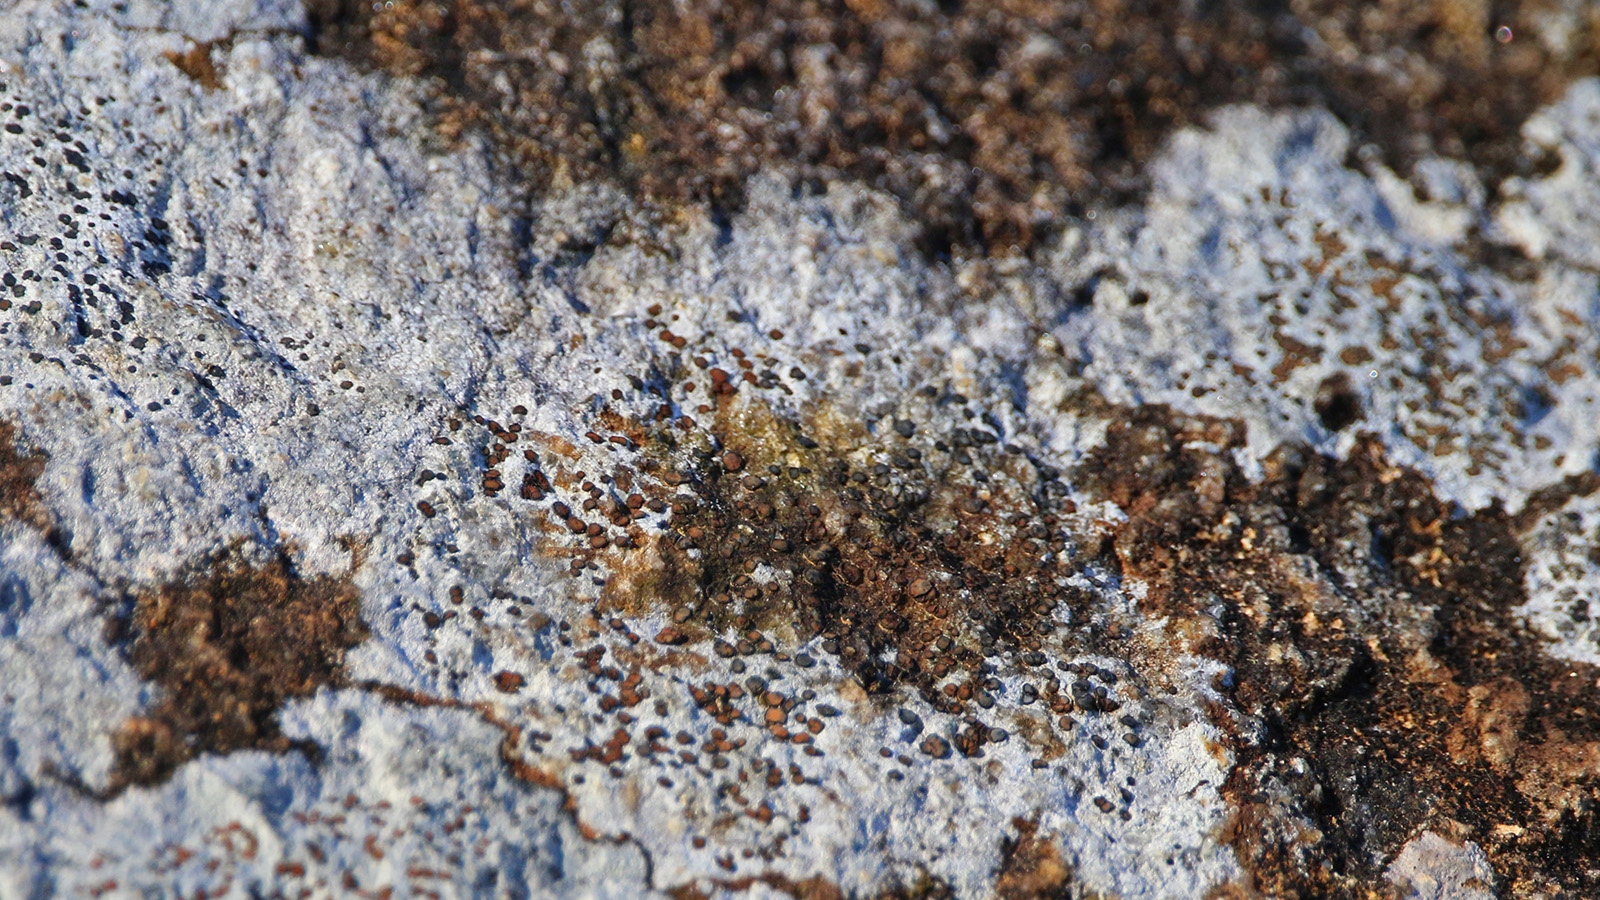 Flora: Lichen on bark